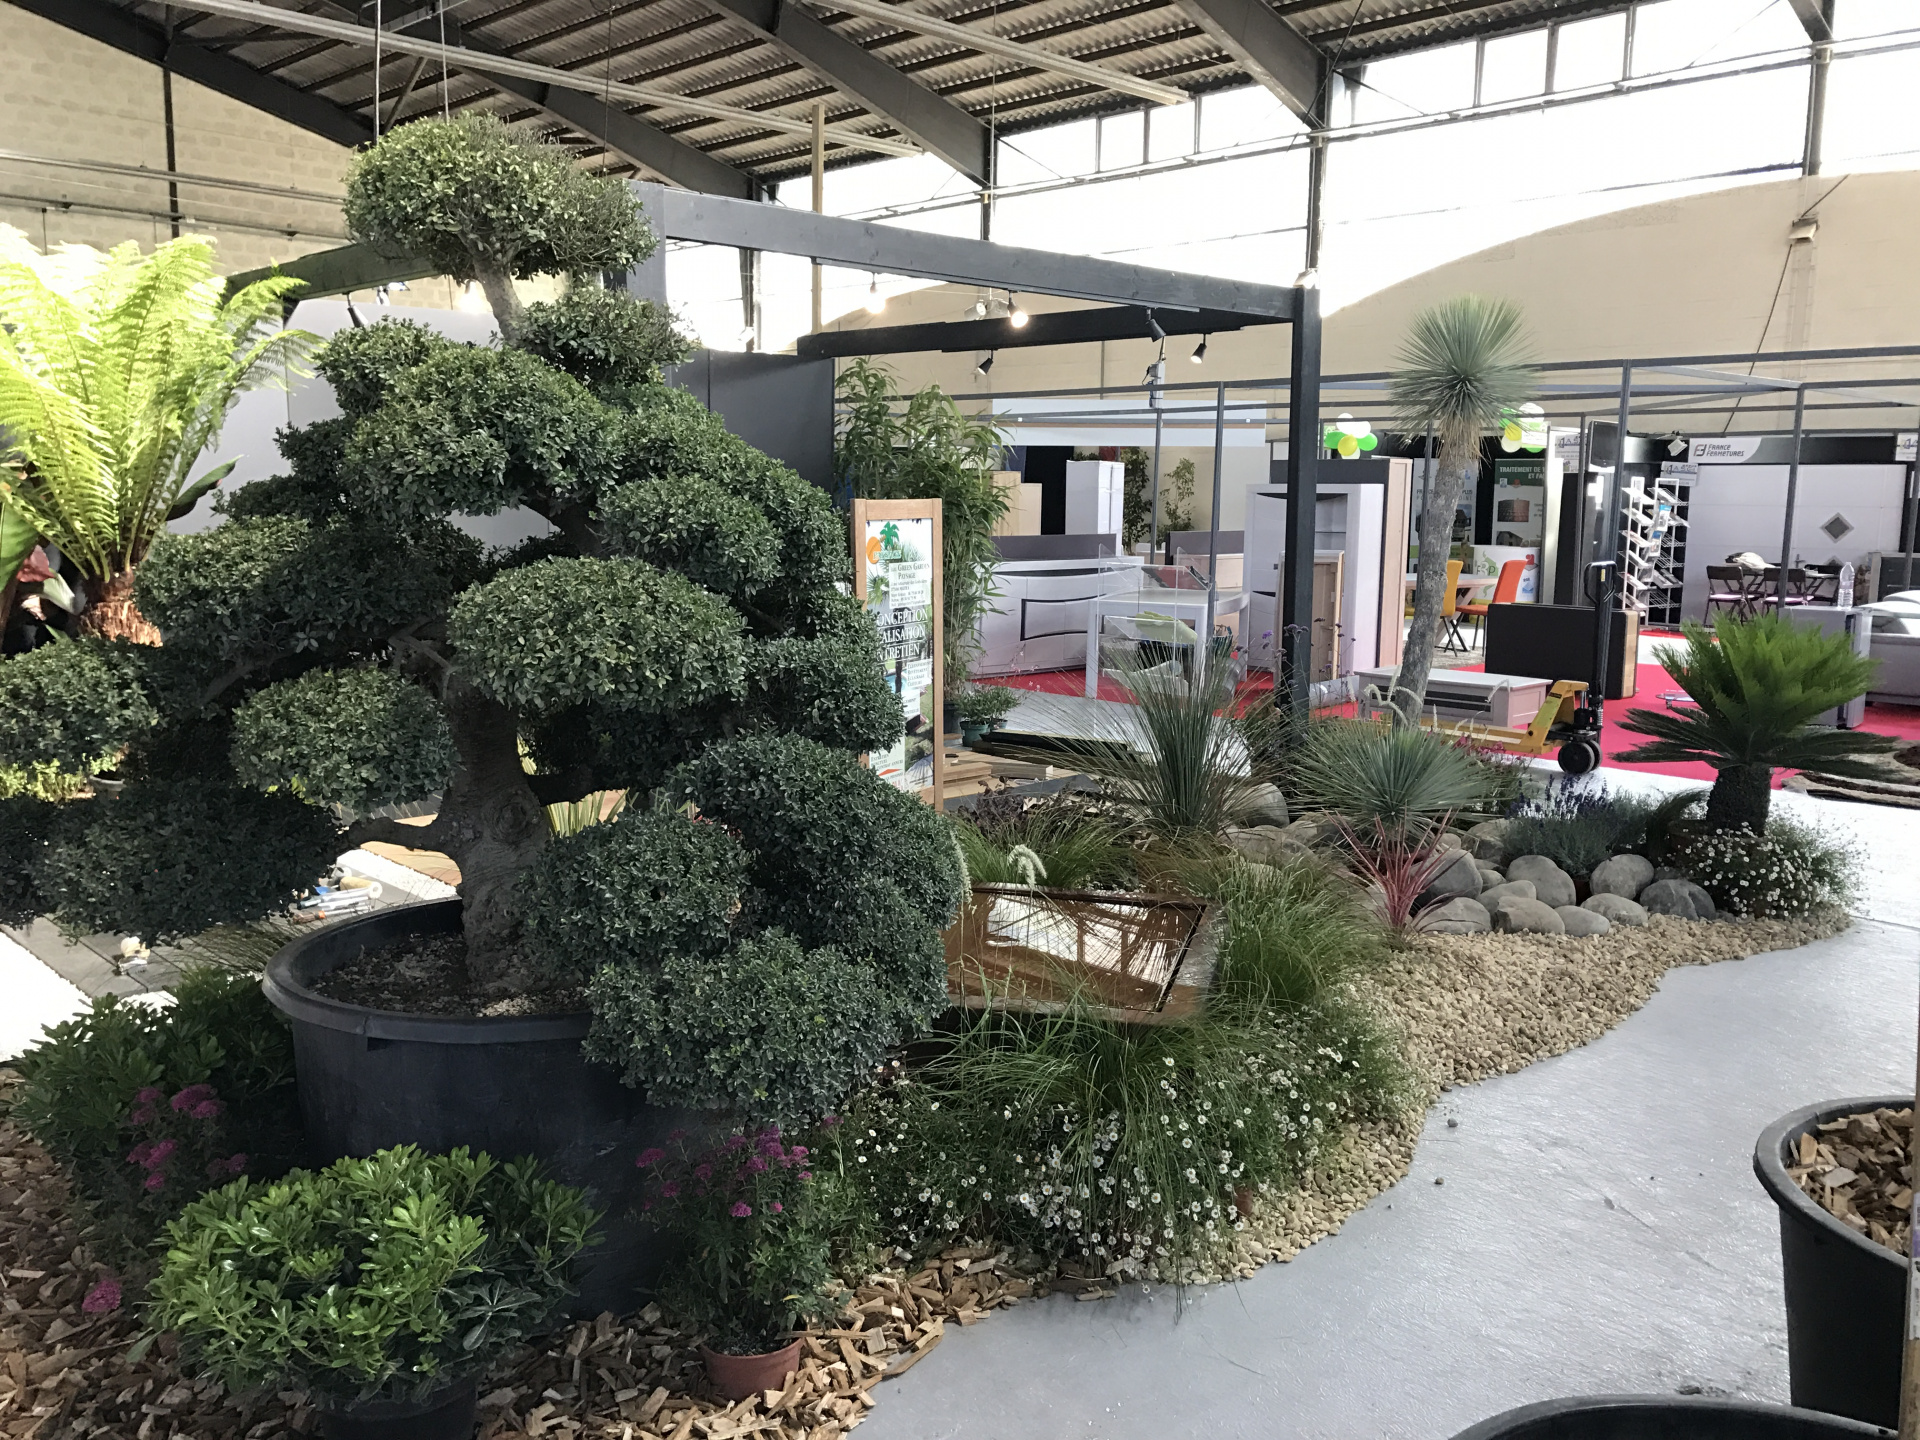 Stand pour le salon de l'habitat 2019, Saintes (17100) - Green Garden Paysage (4/5)